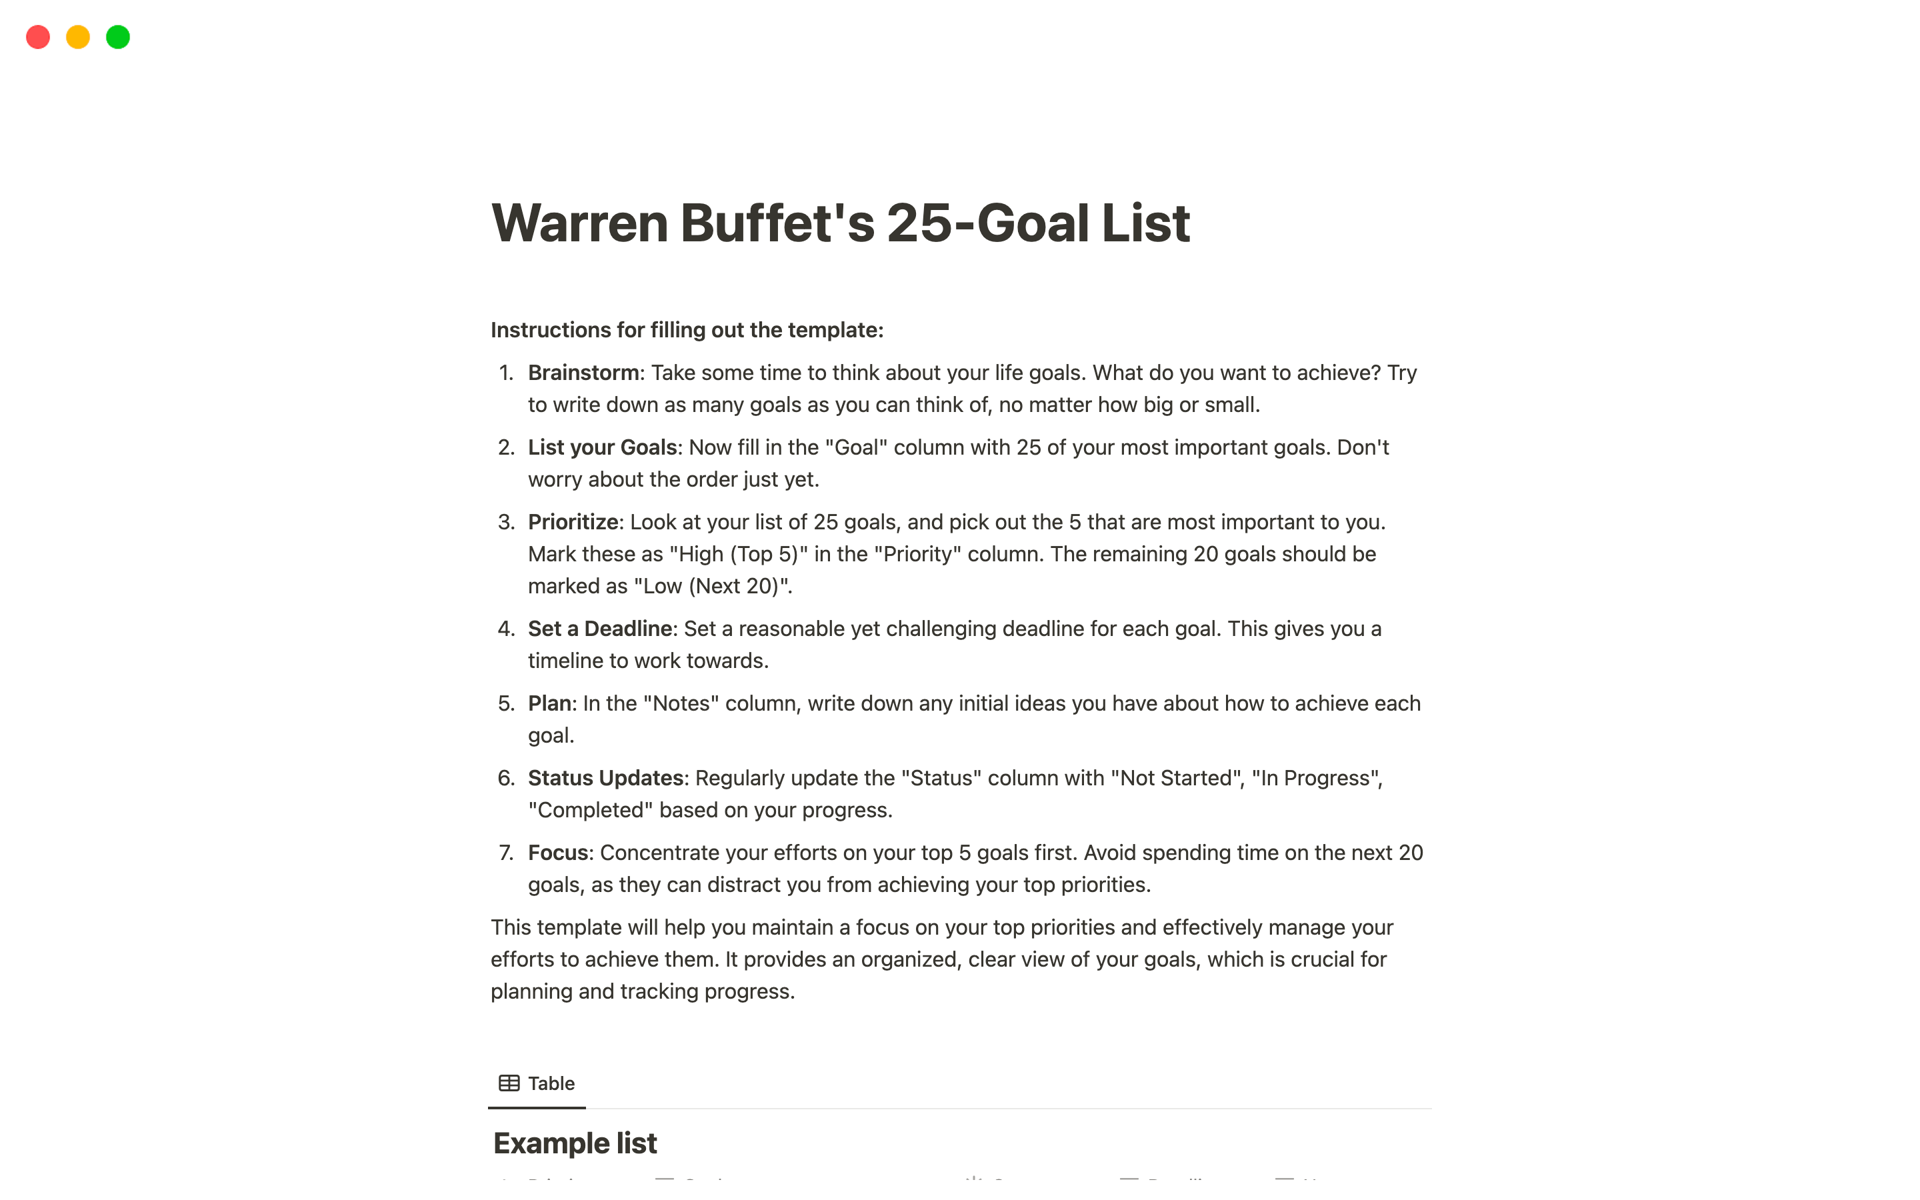 A template preview for Warren Buffet's 25-Goal List